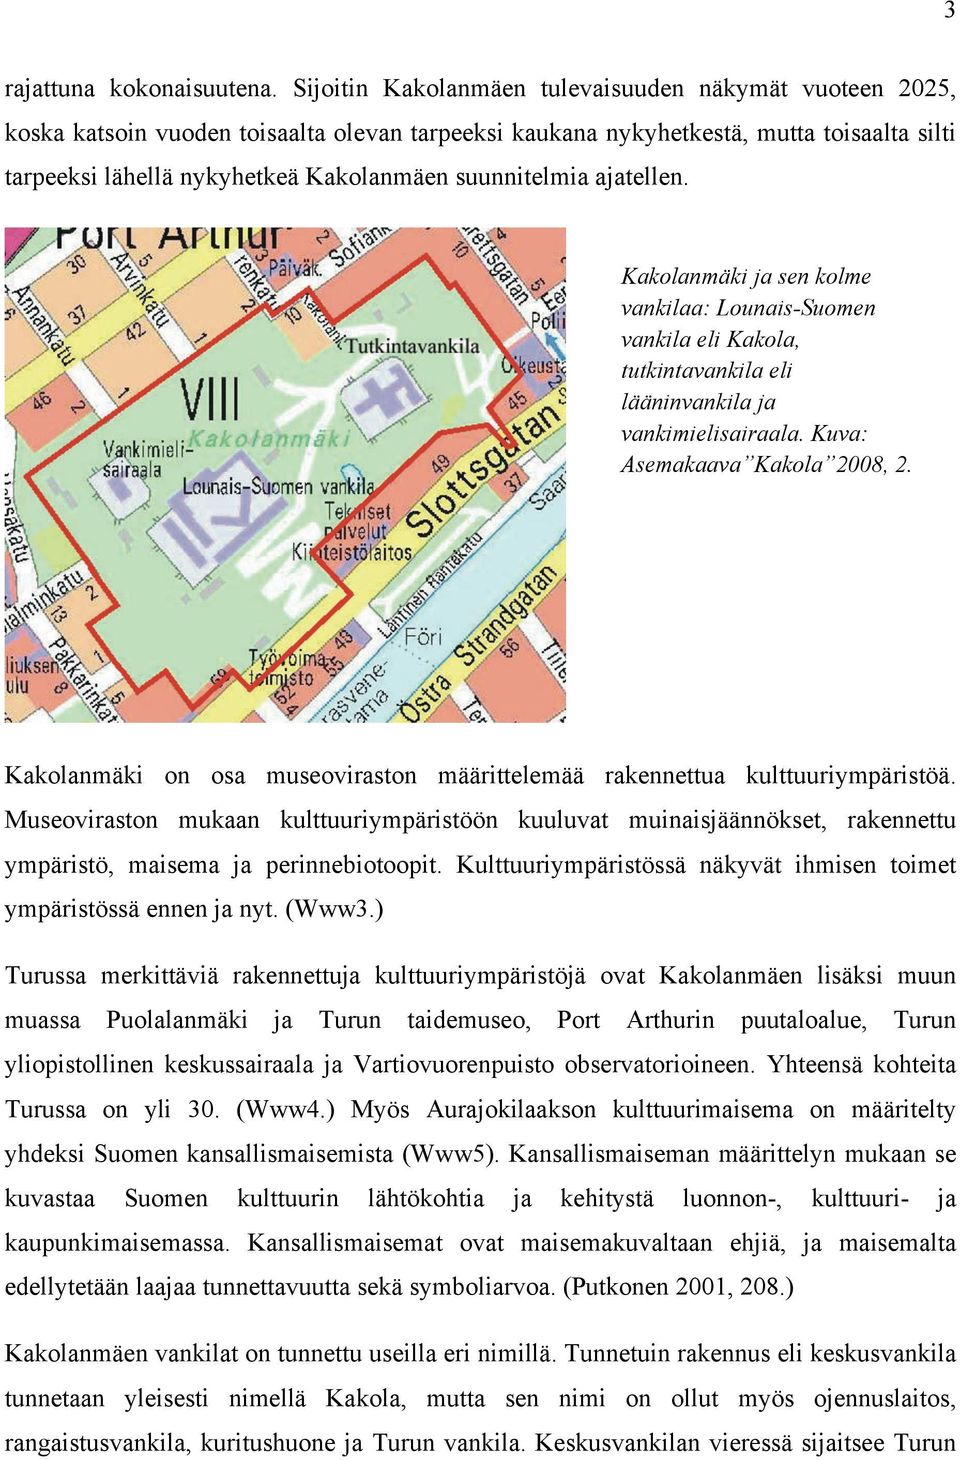 suunnitelmia ajatellen. Kakolanmäki ja sen kolme vankilaa: Lounais-Suomen vankila eli Kakola, tutkintavankila eli lääninvankila ja vankimielisairaala. Kuva: Asemakaava Kakola 2008, 2.